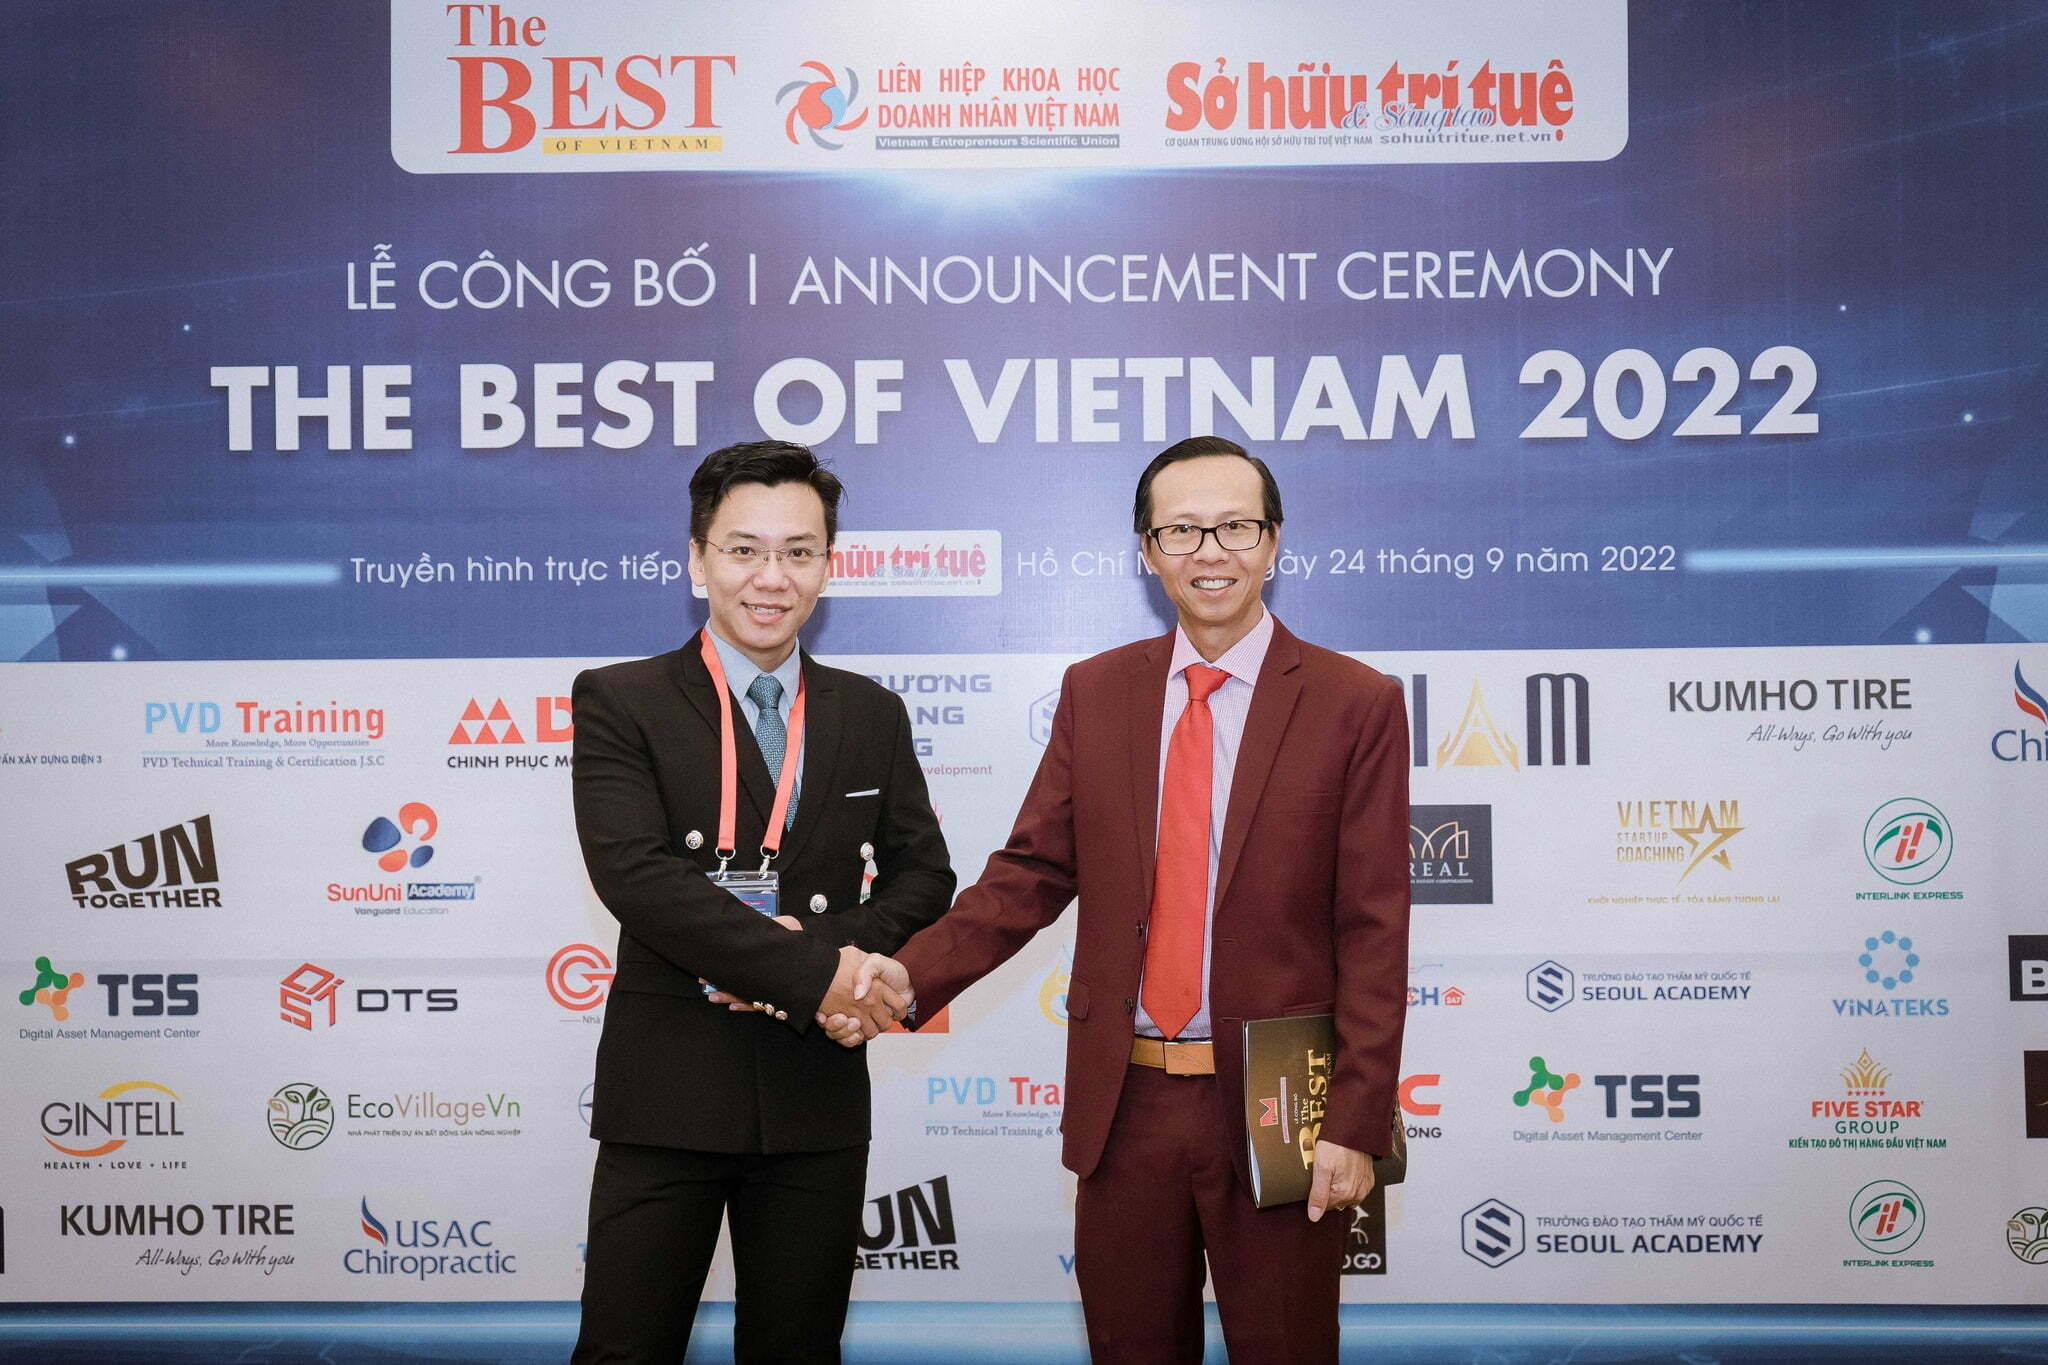 Đại diện cho VSC – Vietnam Startup Coaching, chuyên gia Đặng Tuấn Tiến rất vinh dự khi được nhận chiếc cúp “The Best of Vietnam 2022”